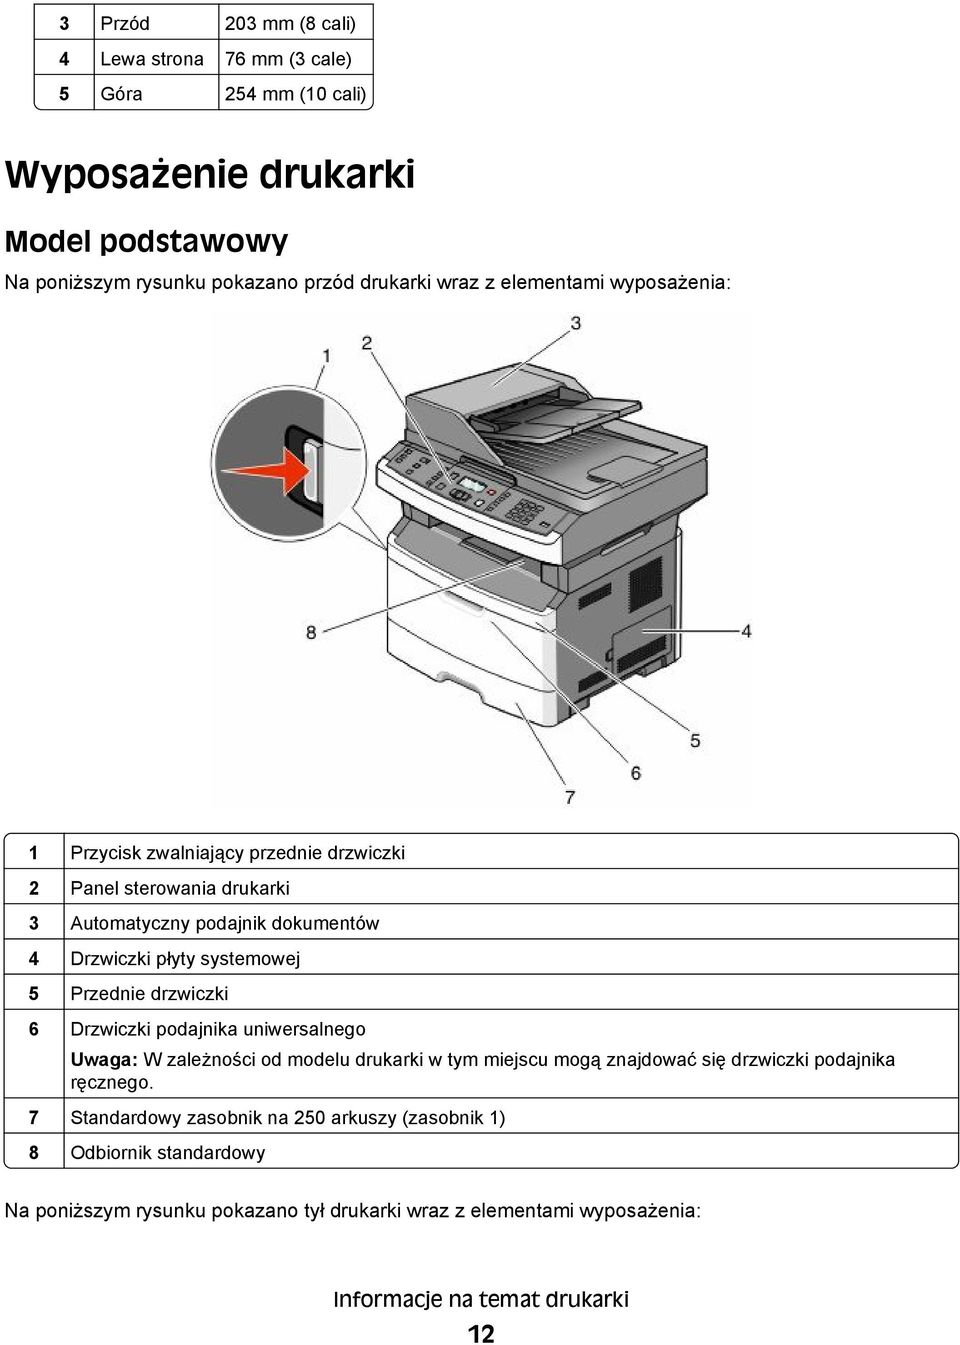 Przednie drzwiczki 6 Drzwiczki podajnika uniwersalnego Uwaga: W zależności od modelu drukarki w tym miejscu mogą znajdować się drzwiczki podajnika ręcznego.